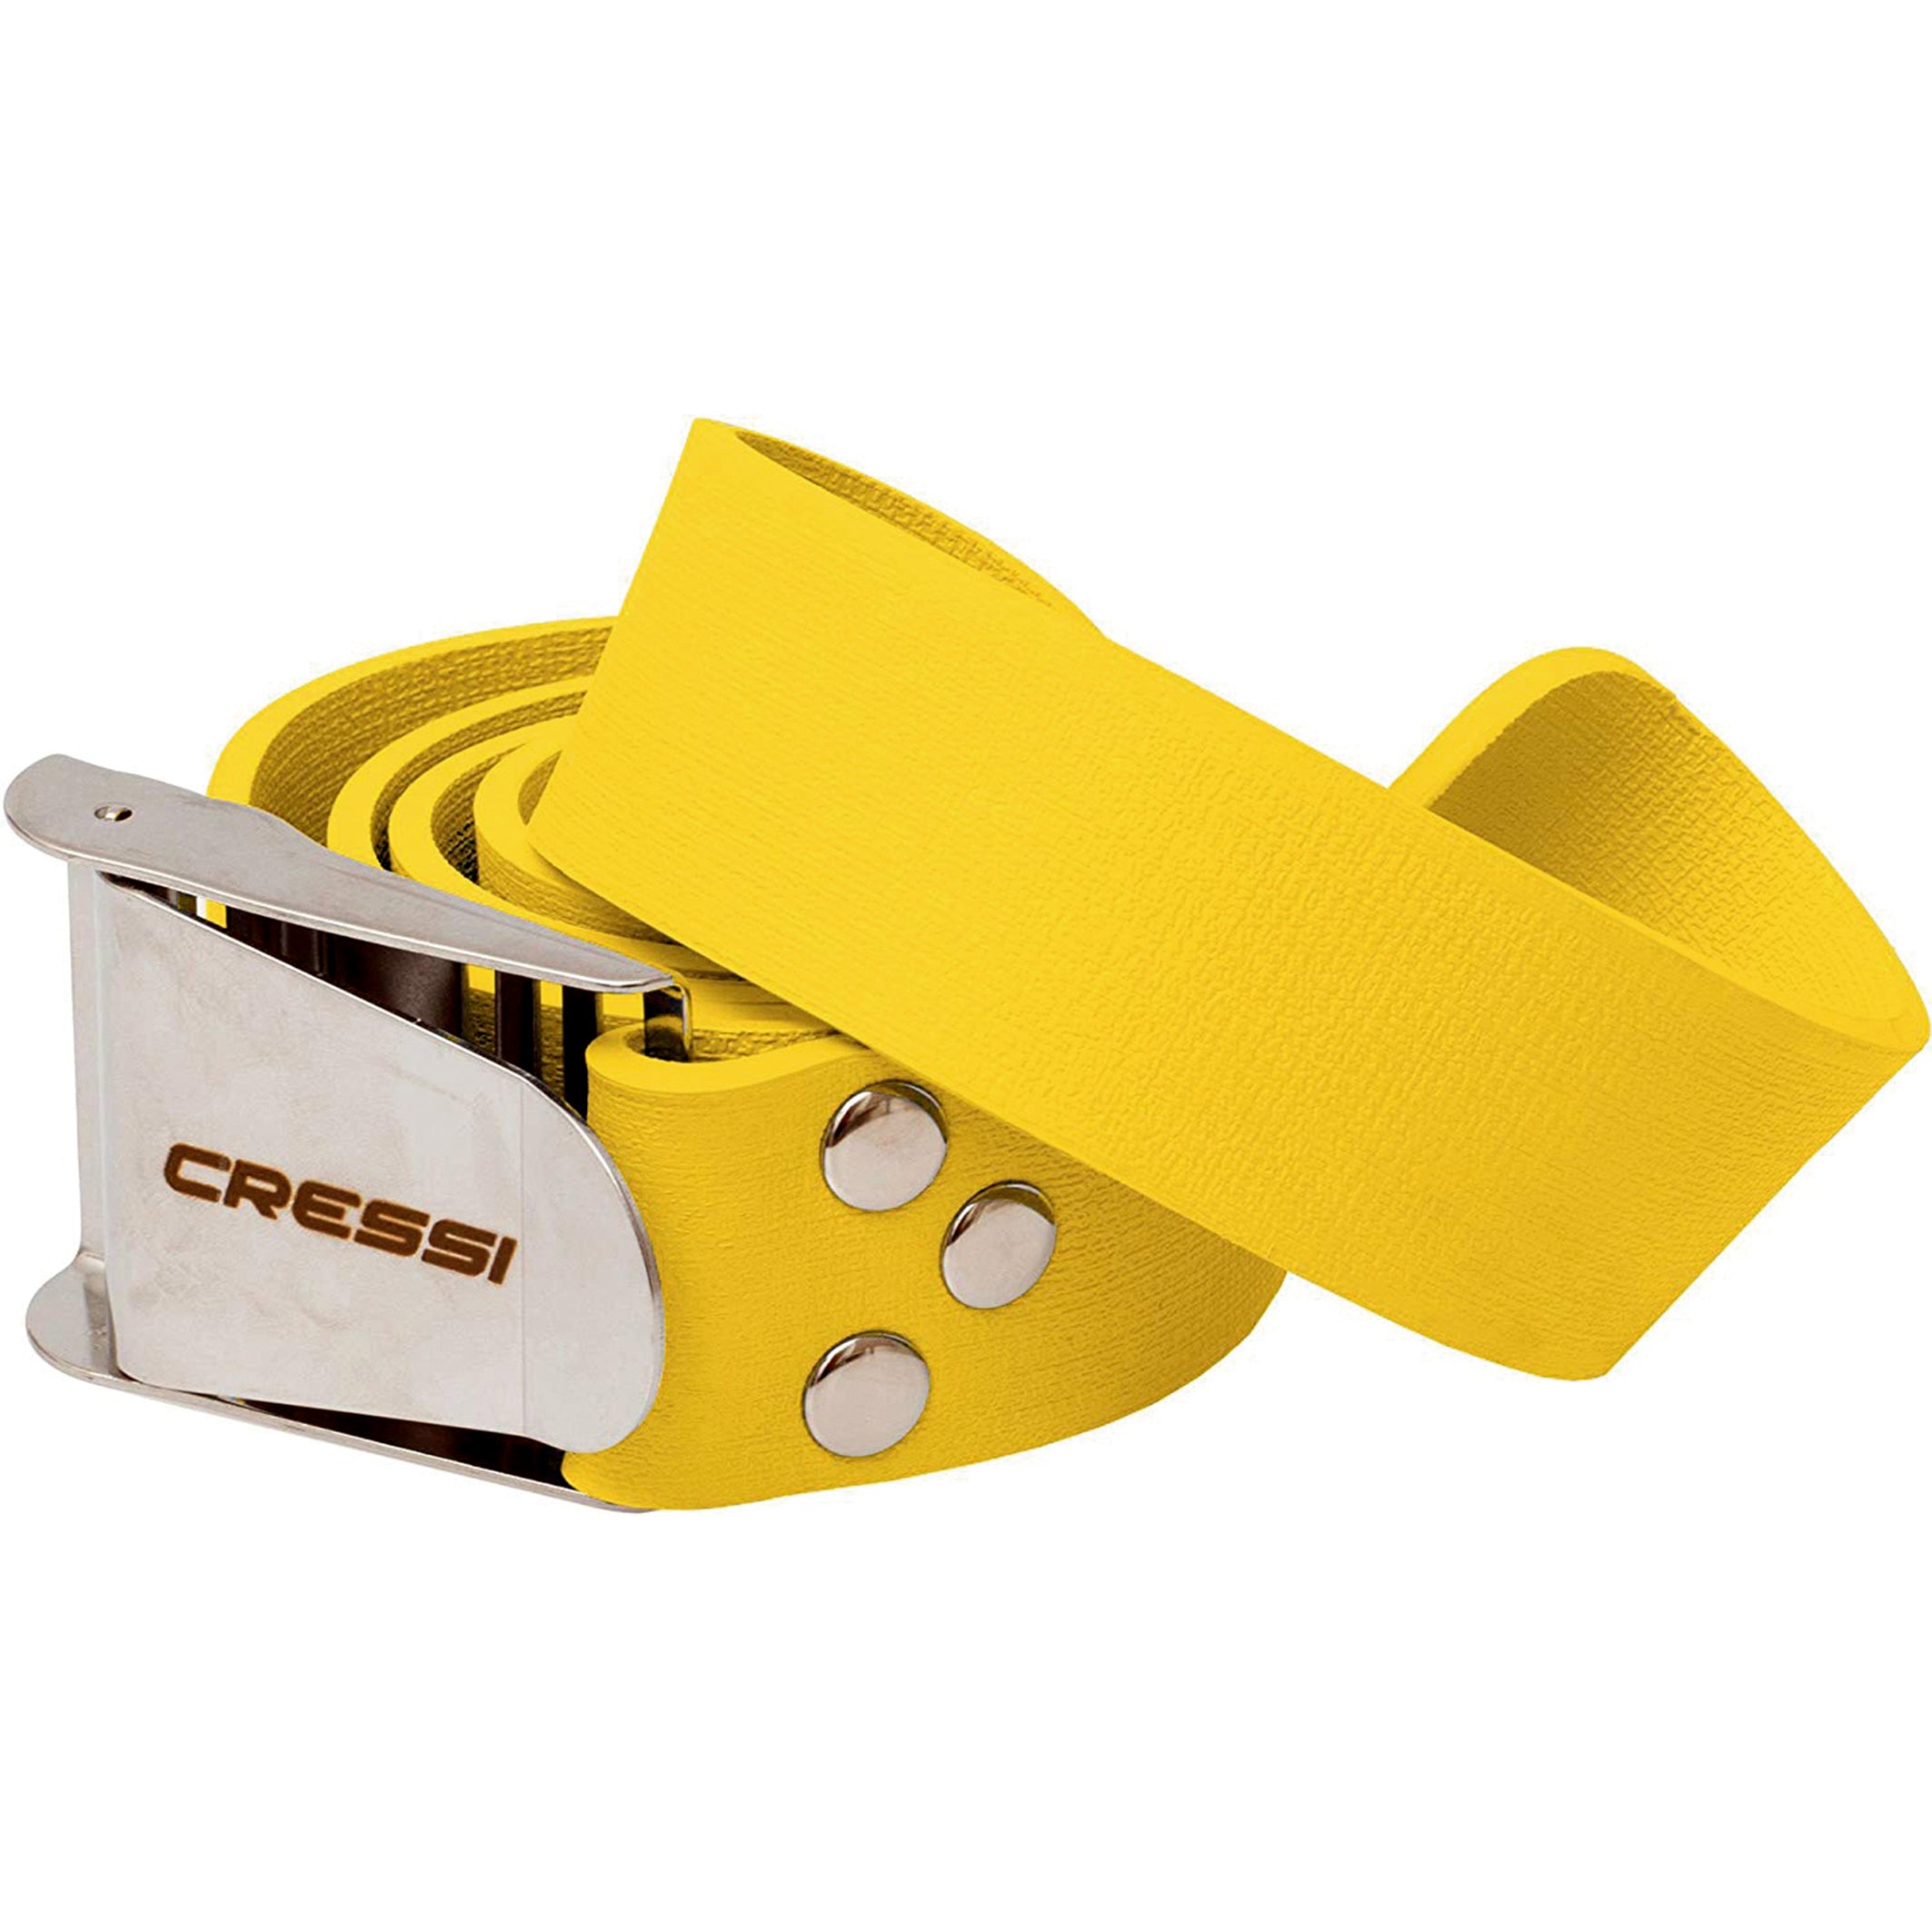 Cressi Elastic Quick Release Weight Belt in Yellow